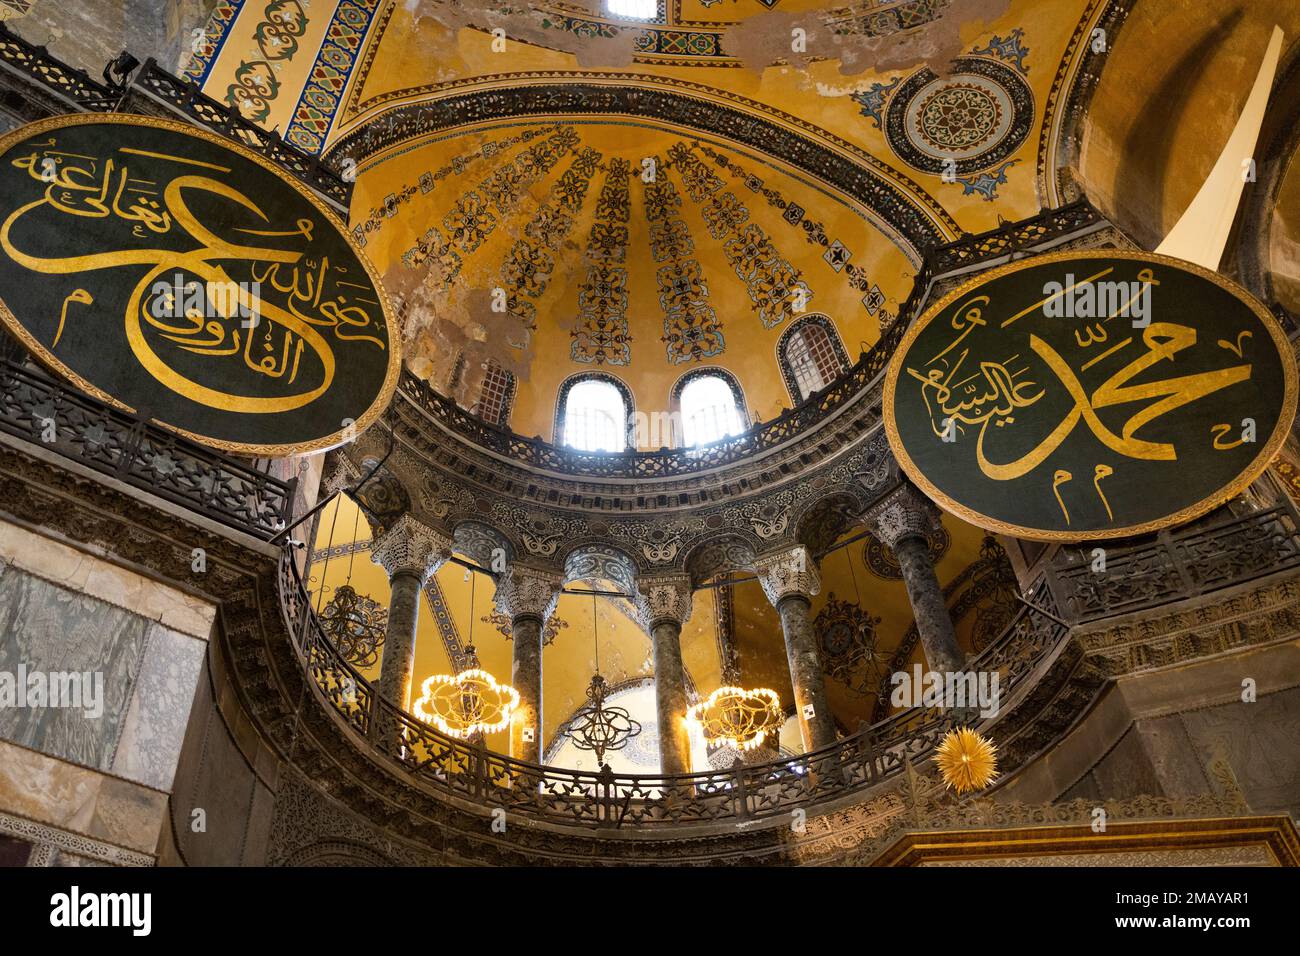 Intérieur de la basilique Sainte-Sophie à Istanbul, Turquie. Sainte-Sophie est le plus grand monument de la culture byzantine. Banque D'Images